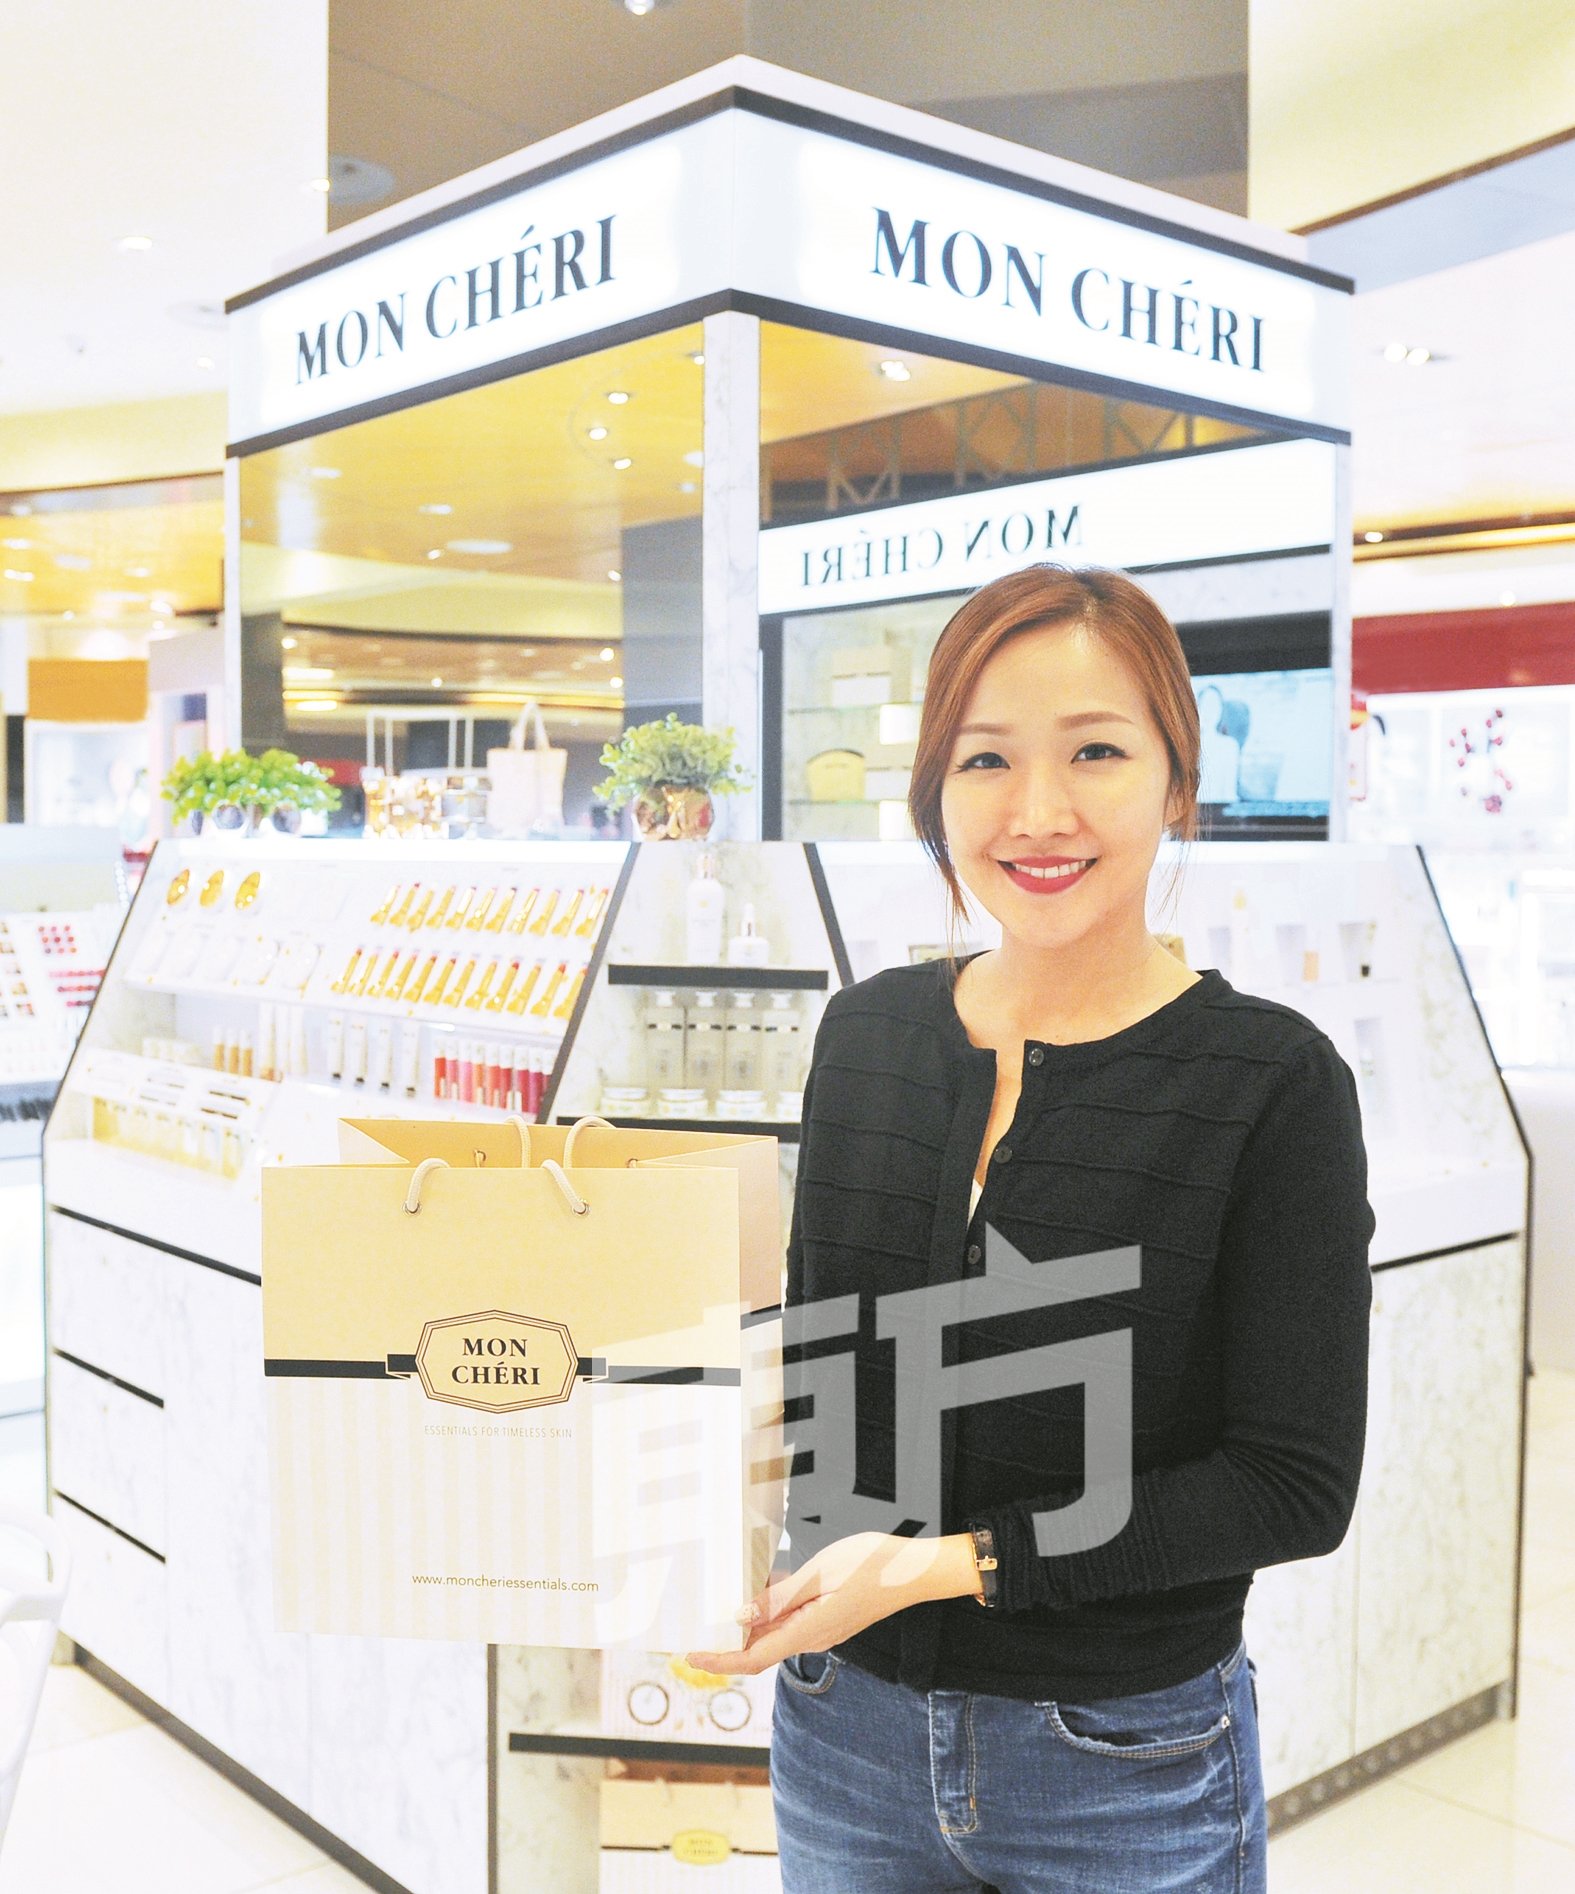 黄韵凤用了4年时间筹备“Mon Cheri”，并在2年前把品牌带出国门。除了在国内设立专柜外，也在网络平台“Shop.com”出售产品。